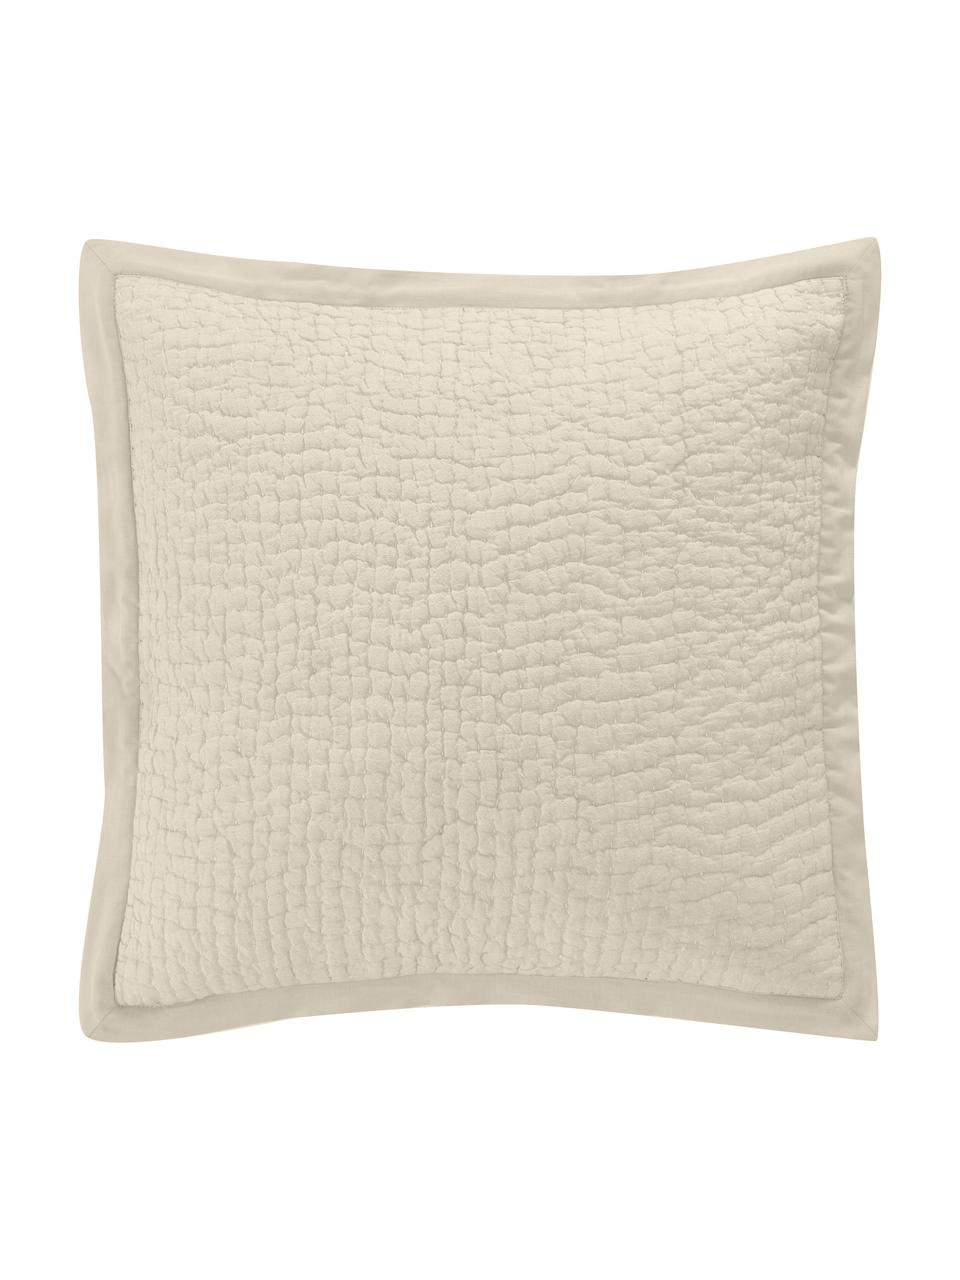 Poszewka na poduszkę Stripes, 100% bawełna, Beżowy, kremowobiały, S 45 x D 45 cm